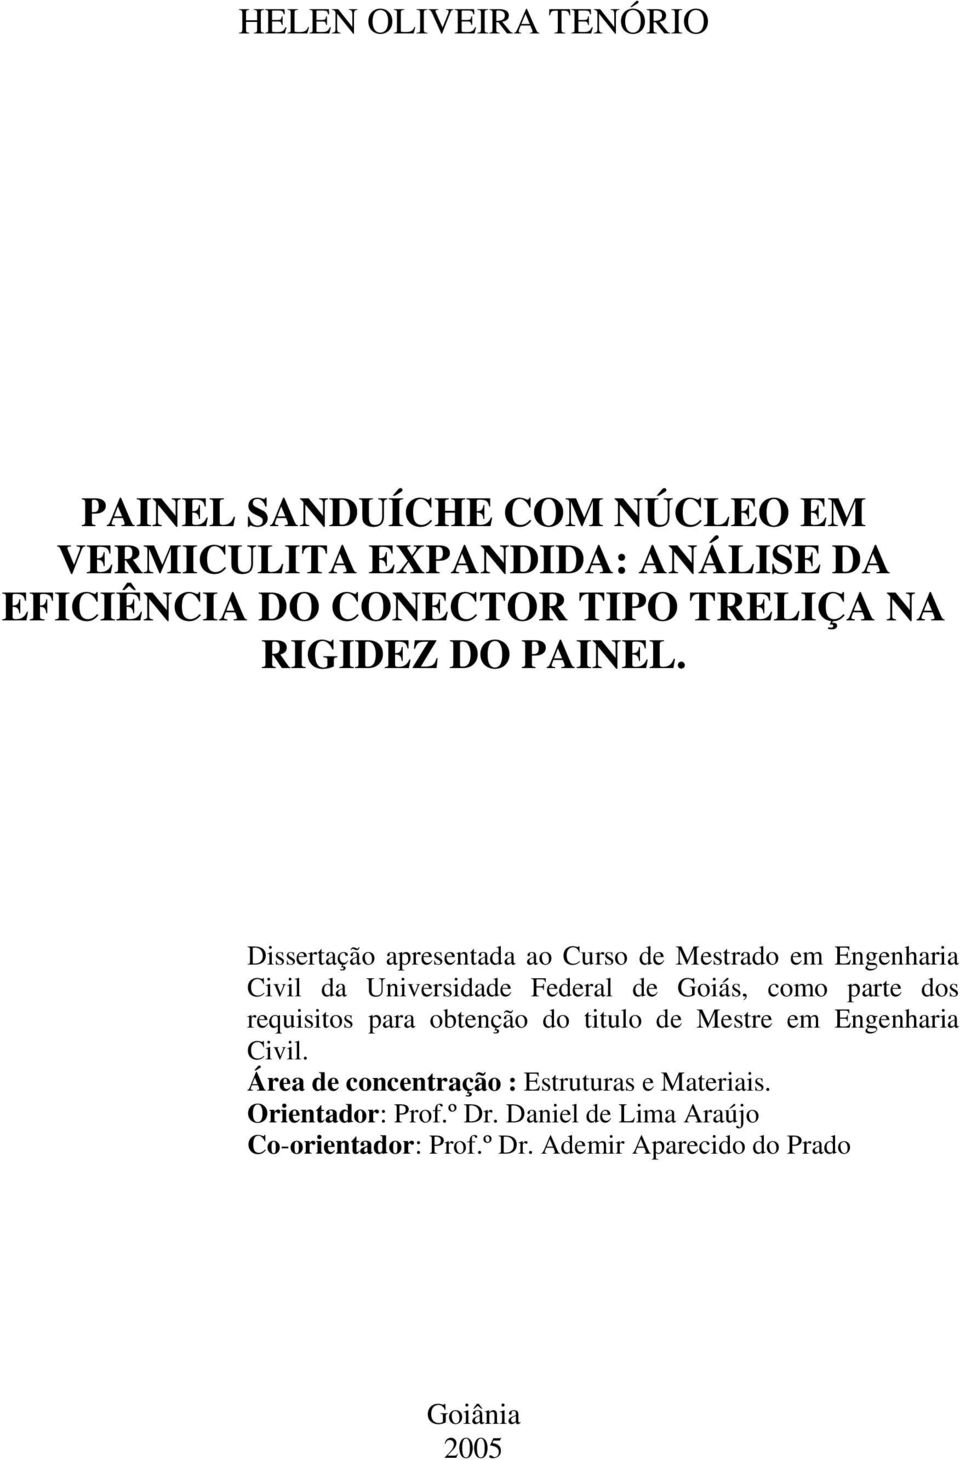 Dissertação apresentada ao Curso de Mestrado em Engenharia Civil da Universidade Federal de Goiás, como parte dos